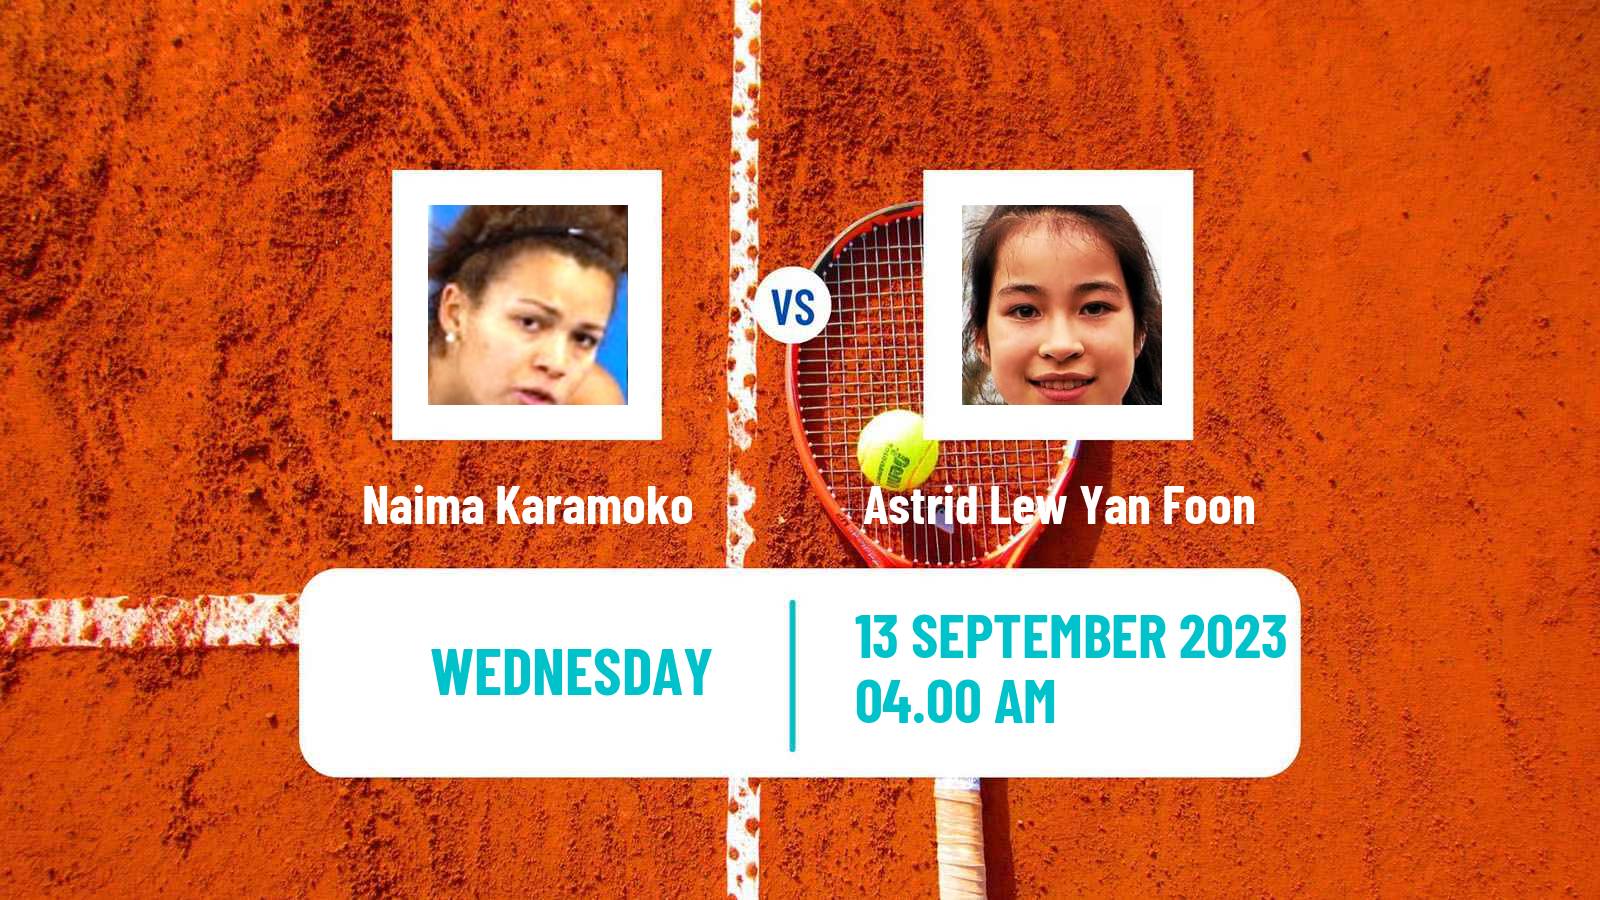 Tennis ITF W15 Dijon Women Naima Karamoko - Astrid Lew Yan Foon